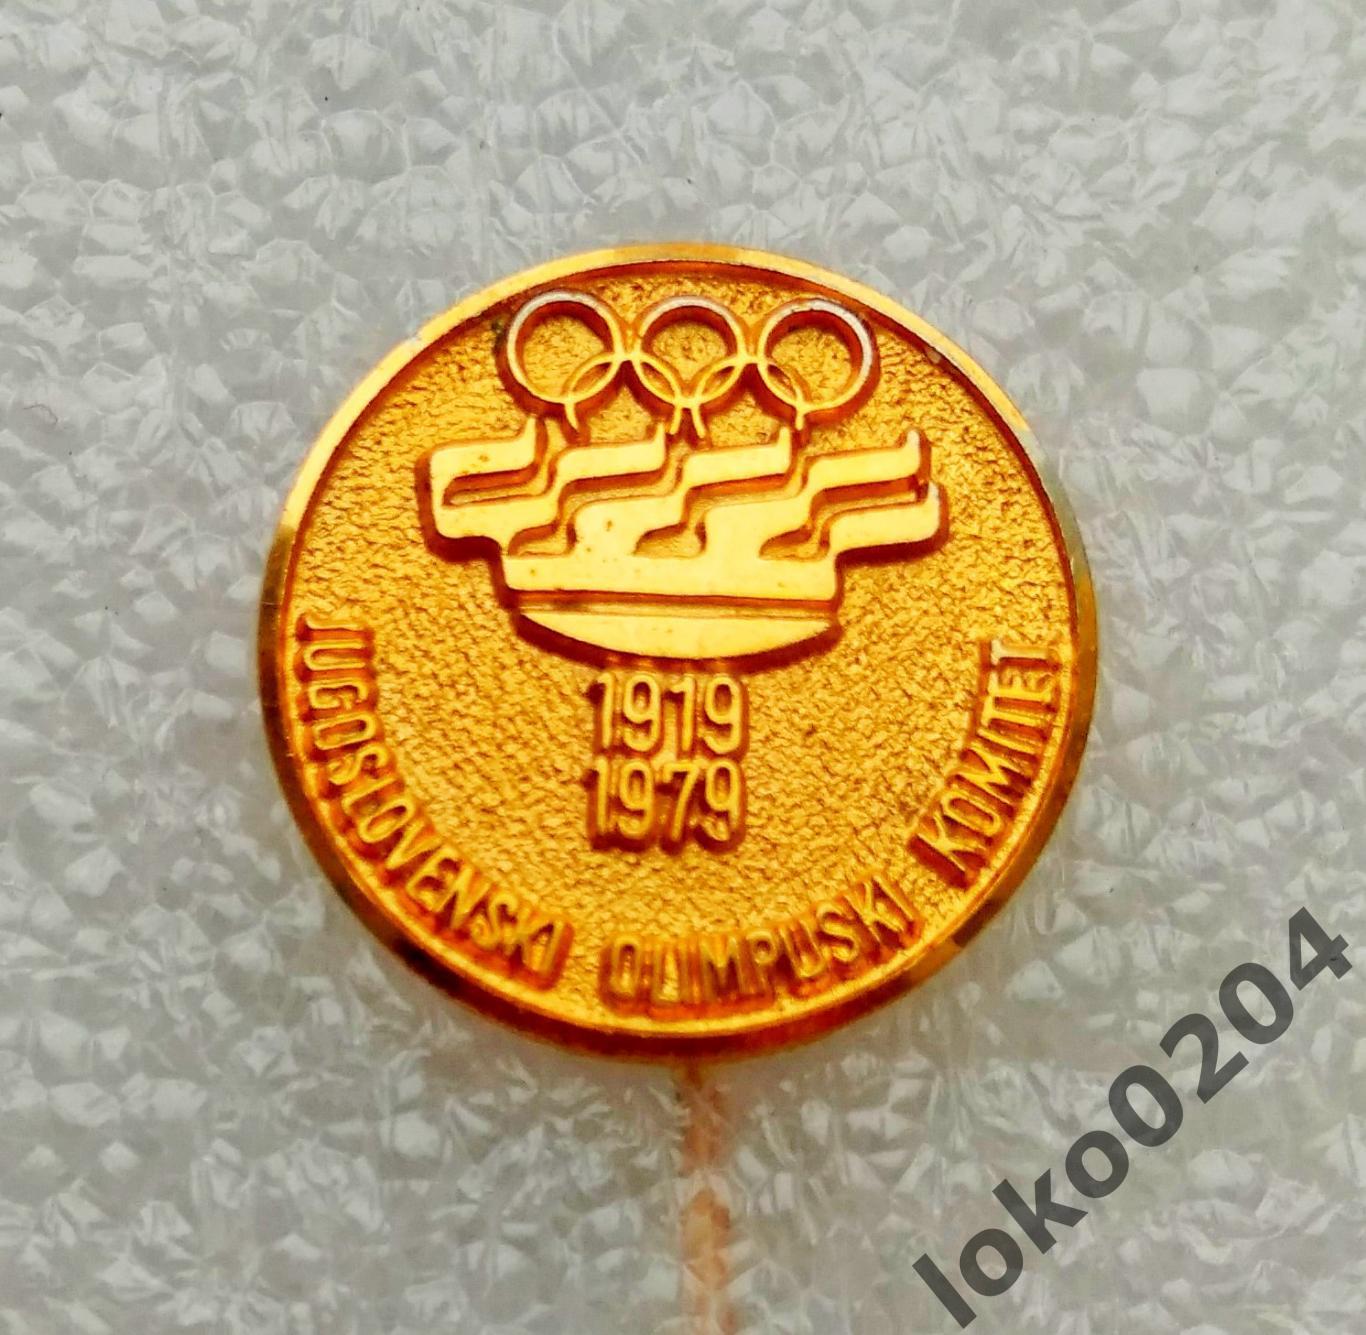 ЮГОСЛАВИЯ. Олимпийский комитет. 1919-1979 (BERTONI).